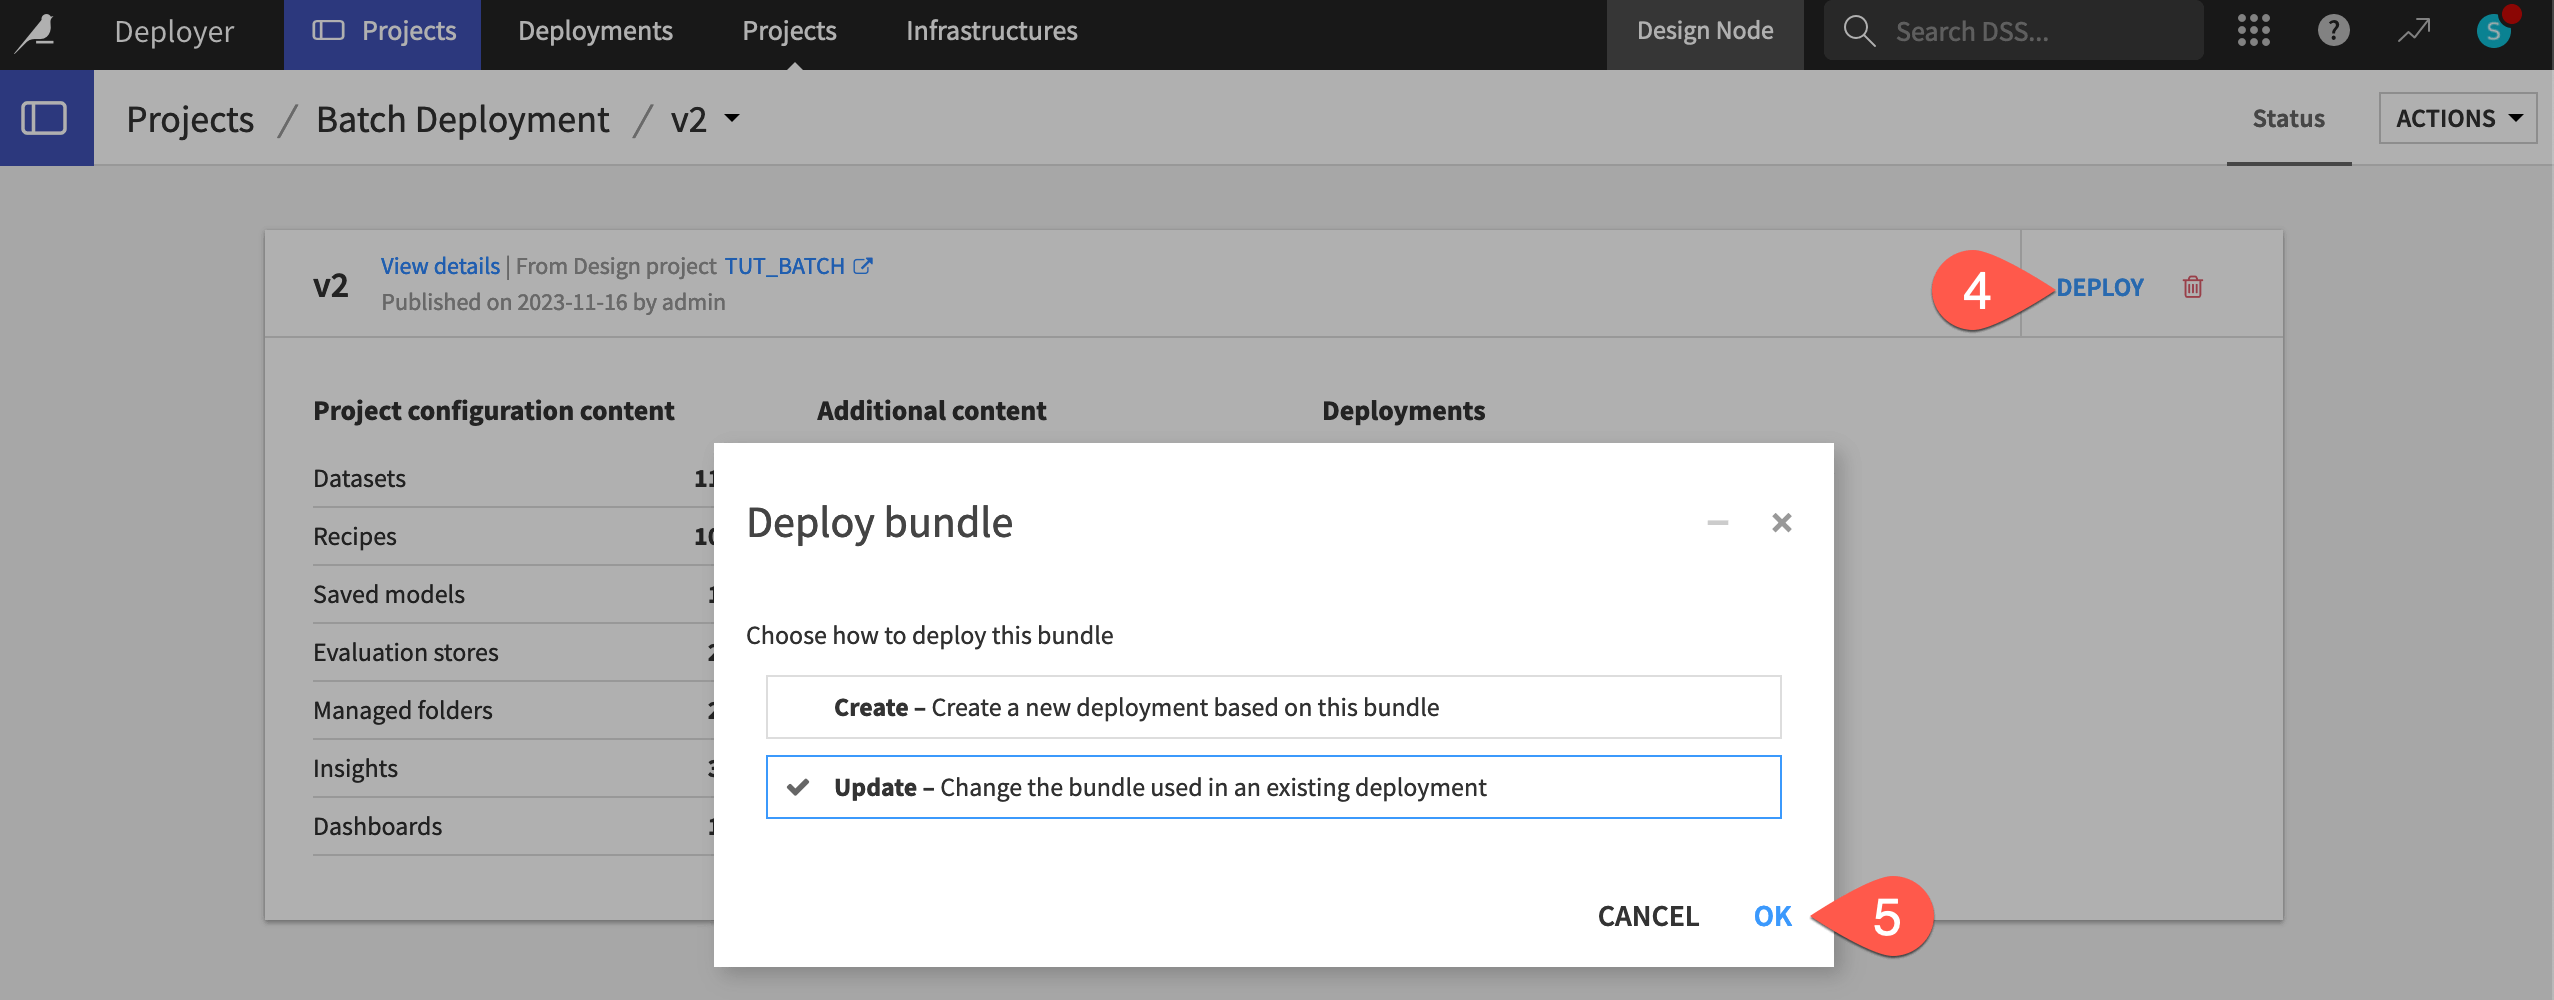 Dataiku screenshot for updating a deployed bundle.